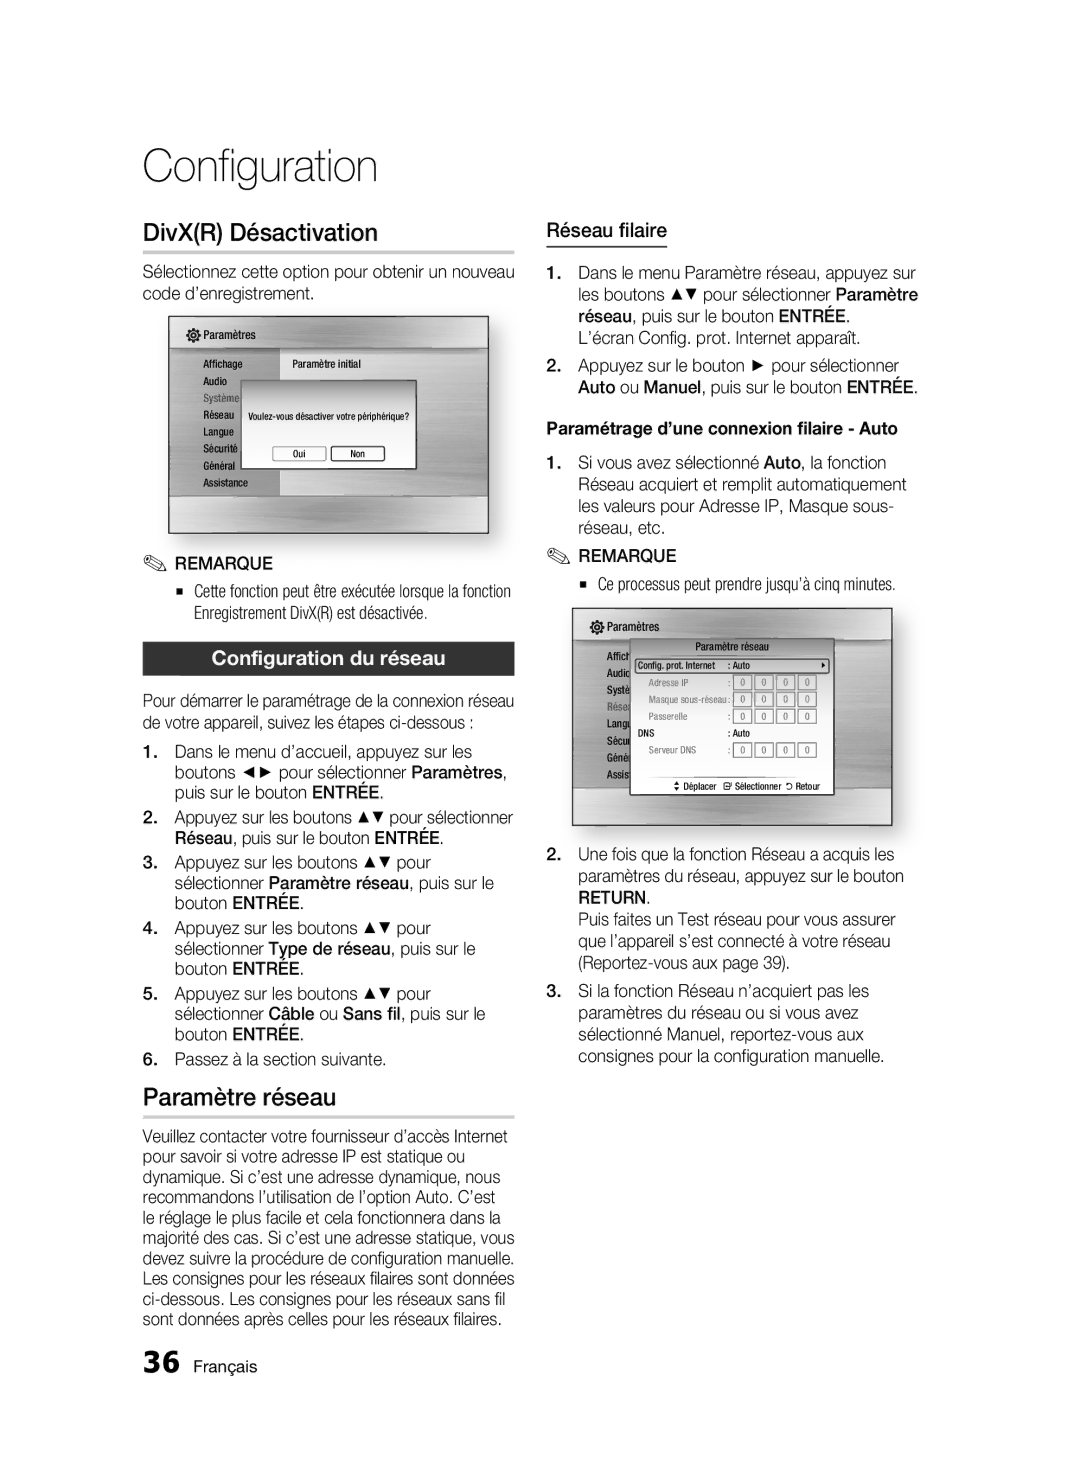 Samsung BD-C5500/XEE, BD-C5500/XAA DivXR Désactivation, Paramètre réseau, Configuration du réseau, Réseau filaire, Return 